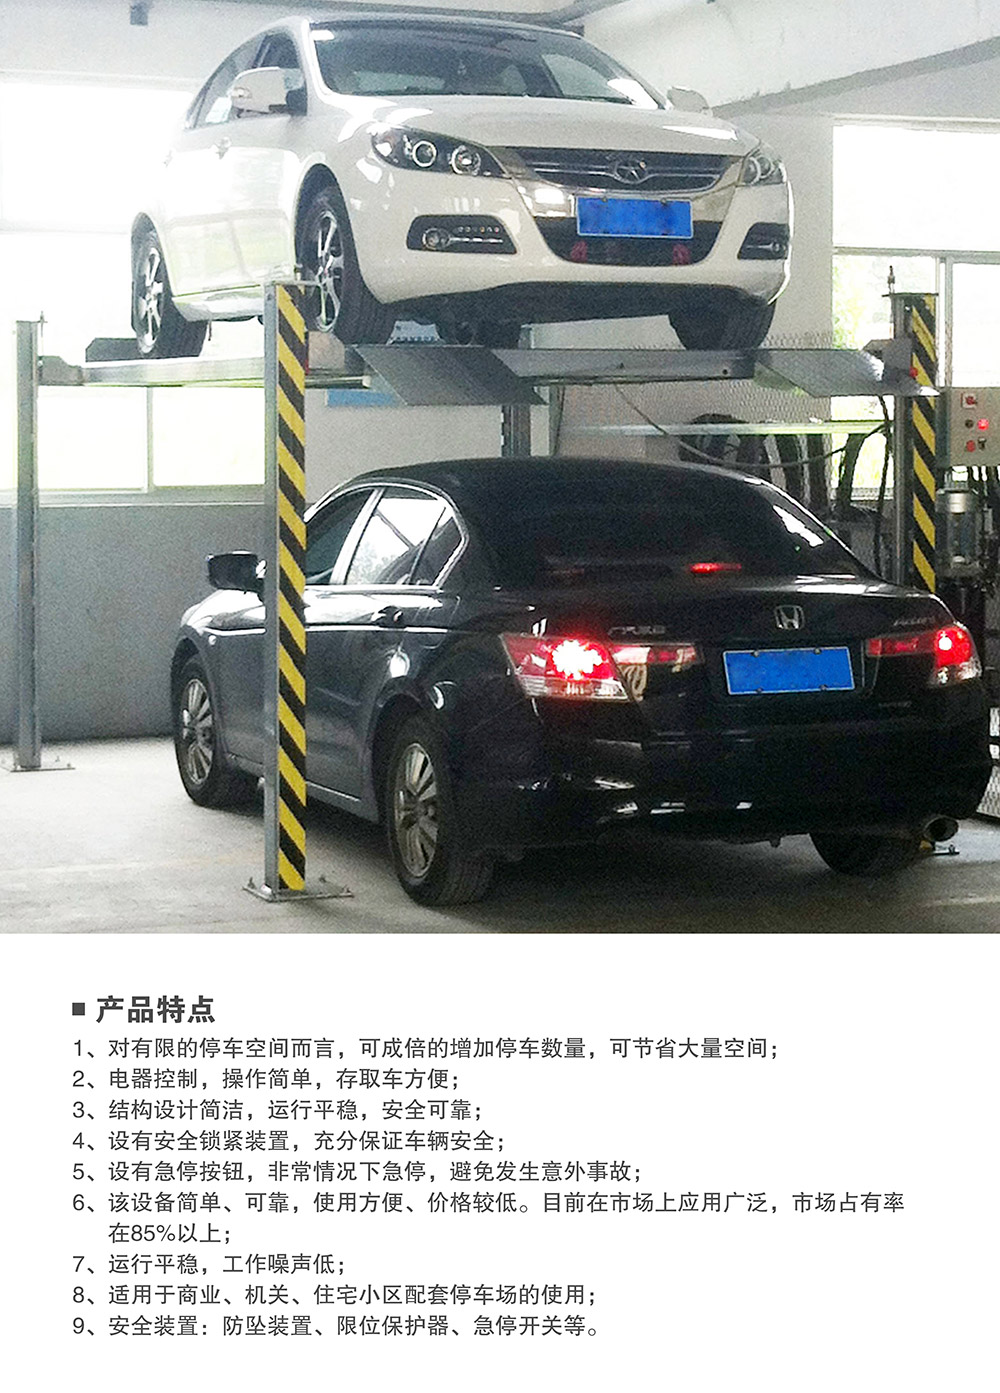 重庆四柱简易升降立体停车设备产品特点.jpg